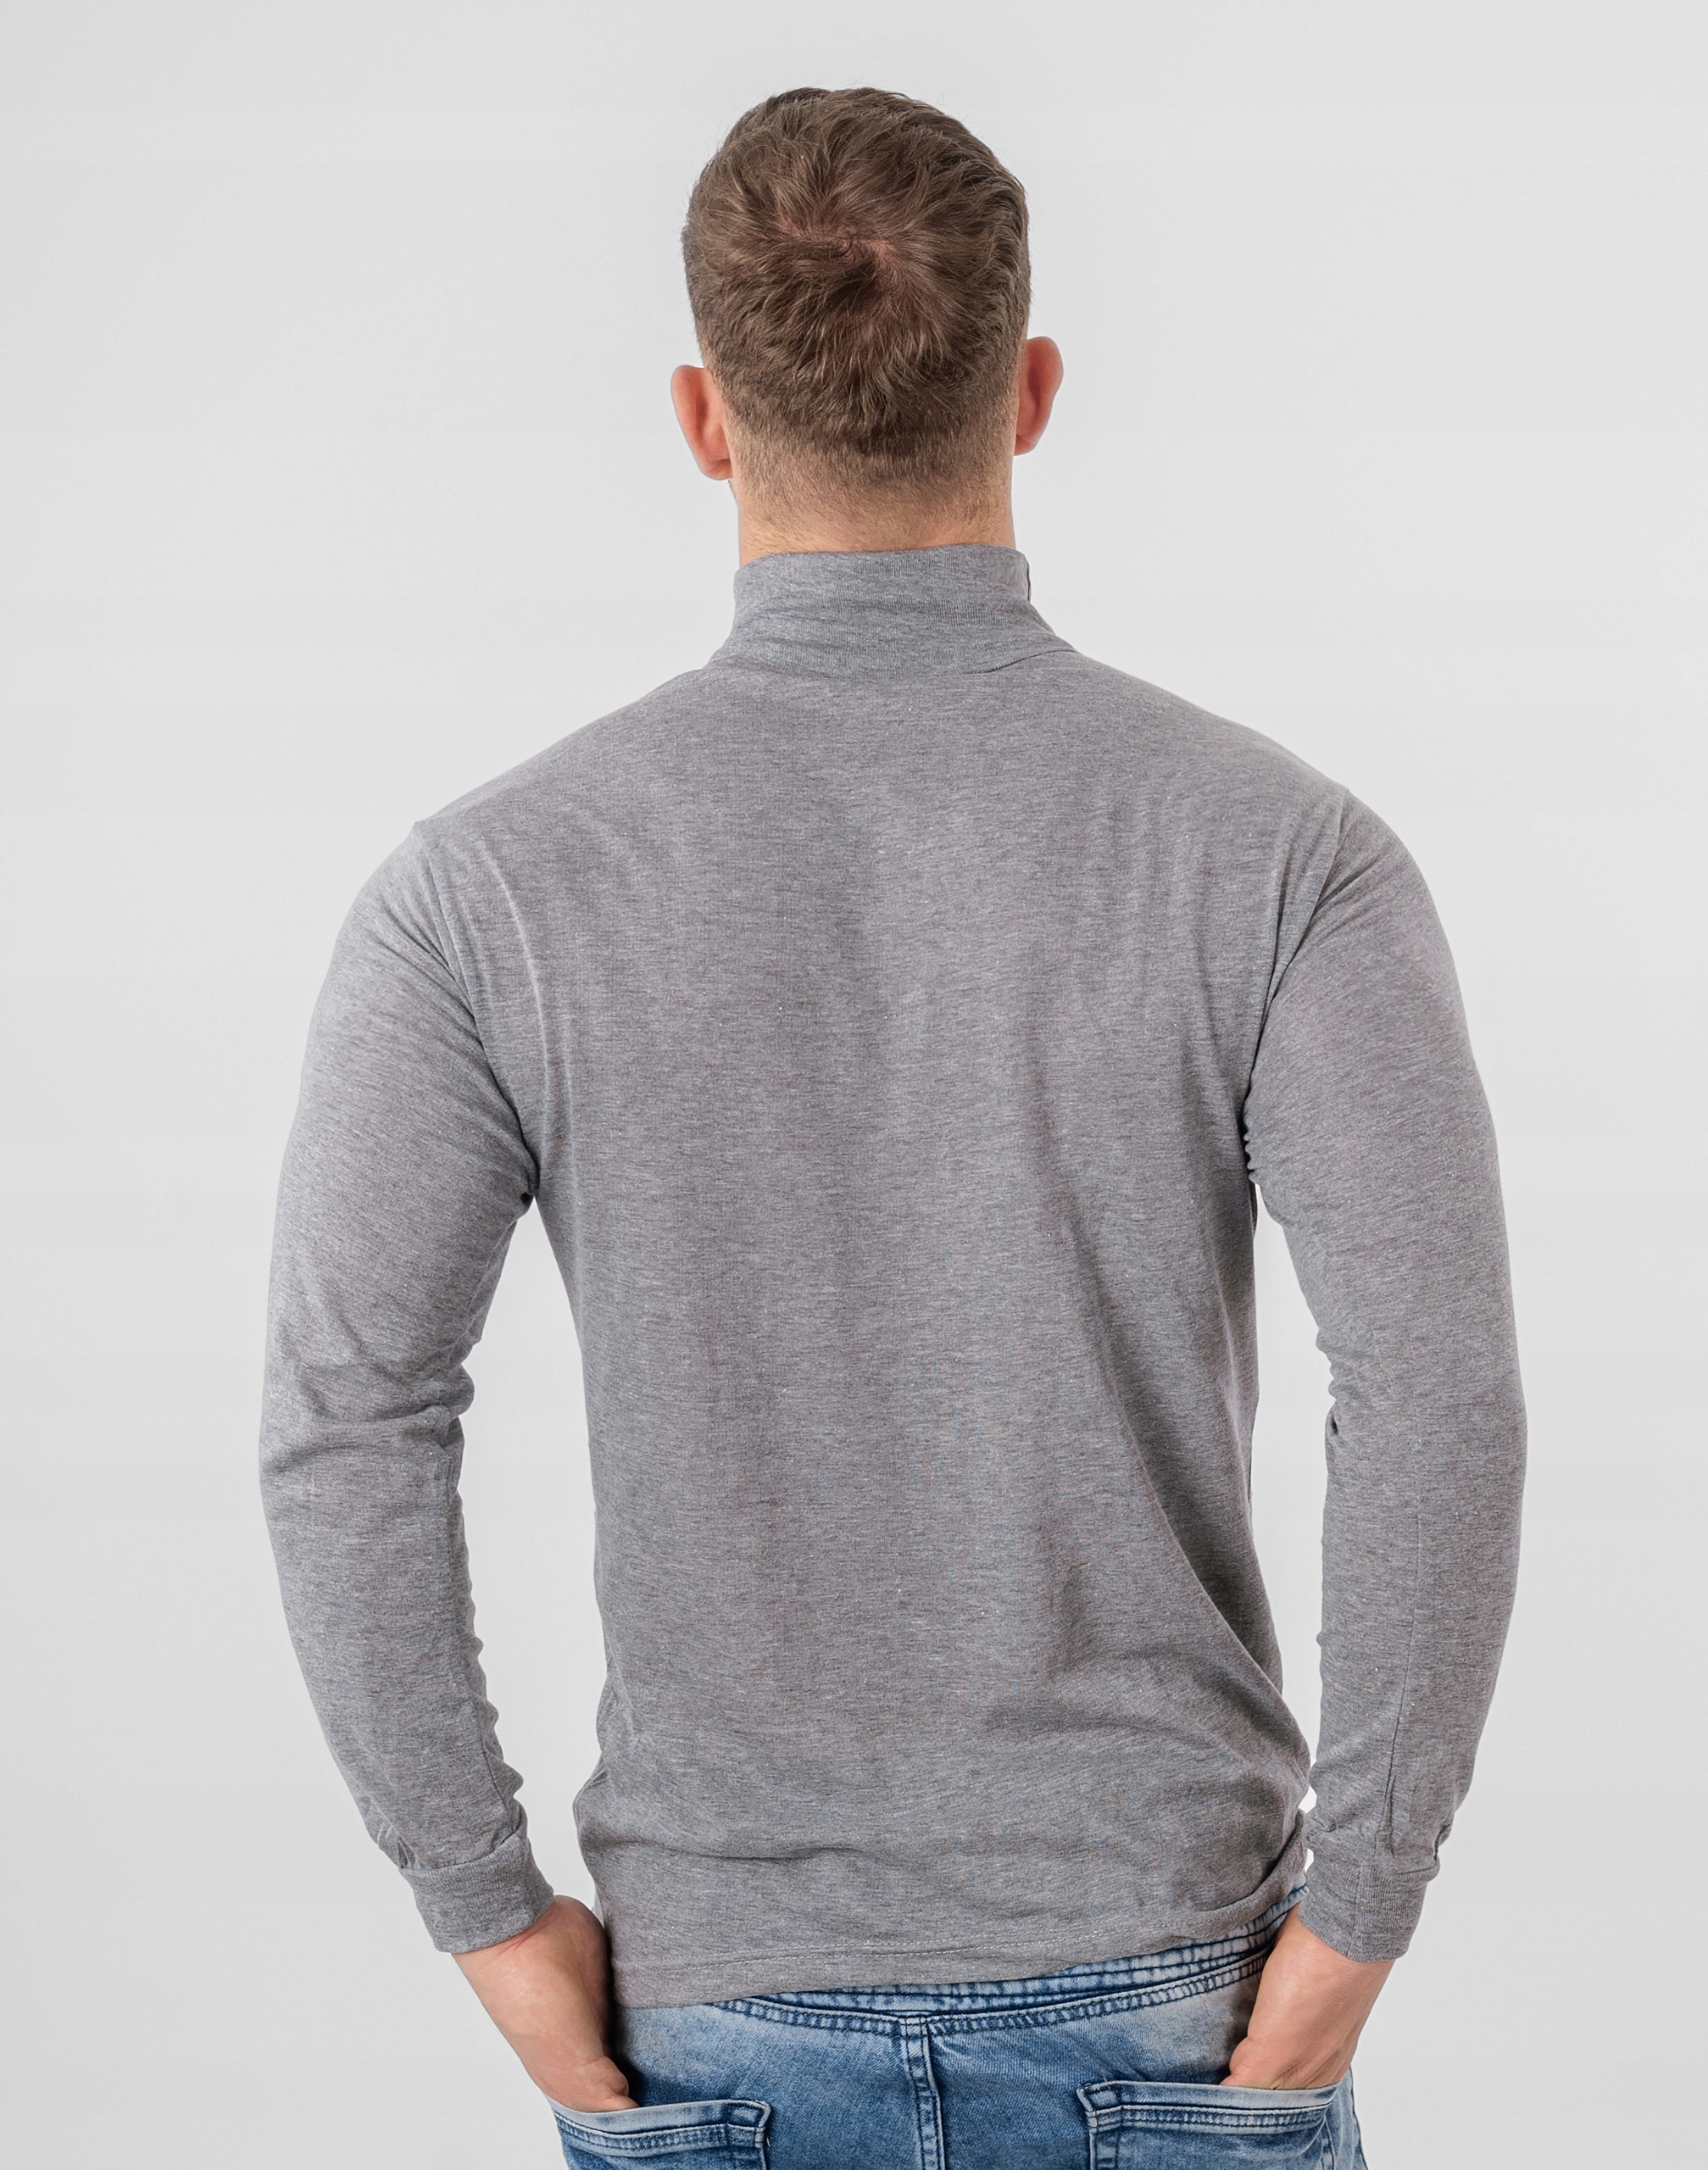 Элегантный тонкий водолазка свитер мужской GM01 XXL серый основной шаблон равнина